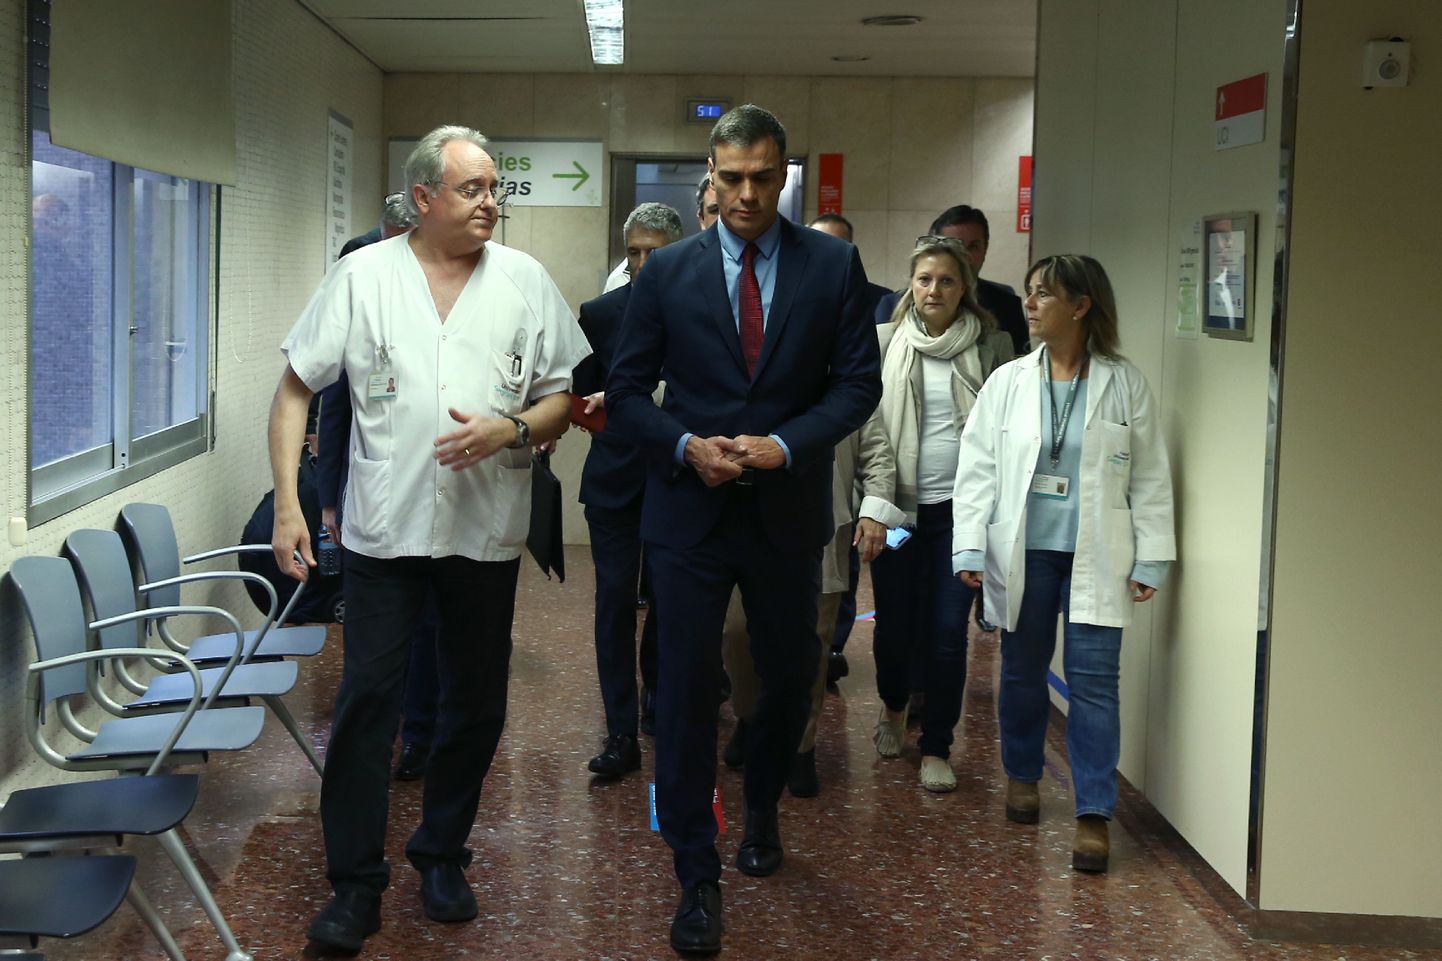 Hispaania peaminister Pedro Sánchez (esiplaanil keskel) külastamas esmaspäeval Barcelonas Santa Creu i Sant Pau haiglat, kus on ravil vägivaldsete meeleavalduste käigus viga saanud politseinikud.